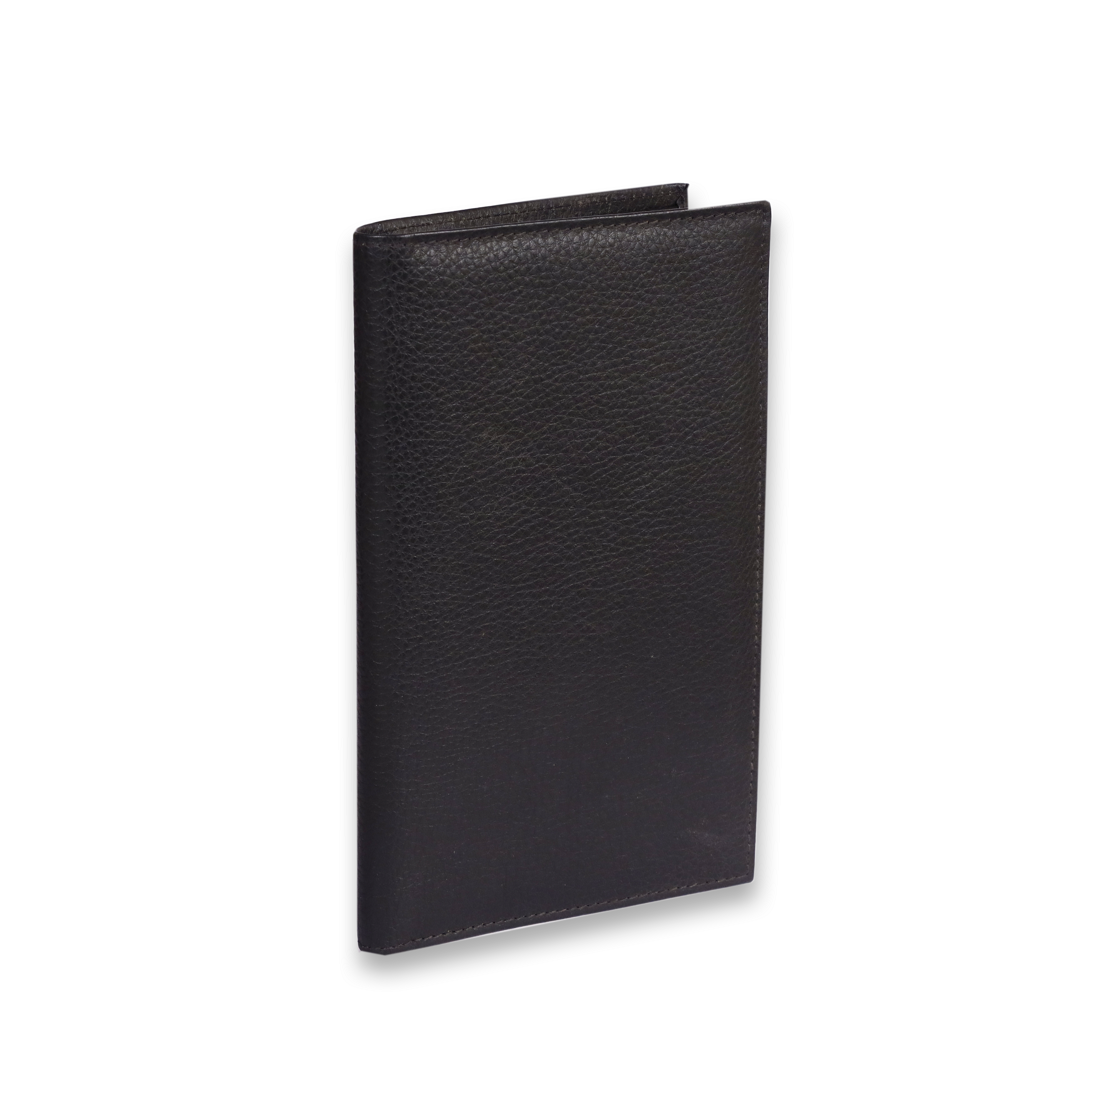 Leather Solid Black Card Holder